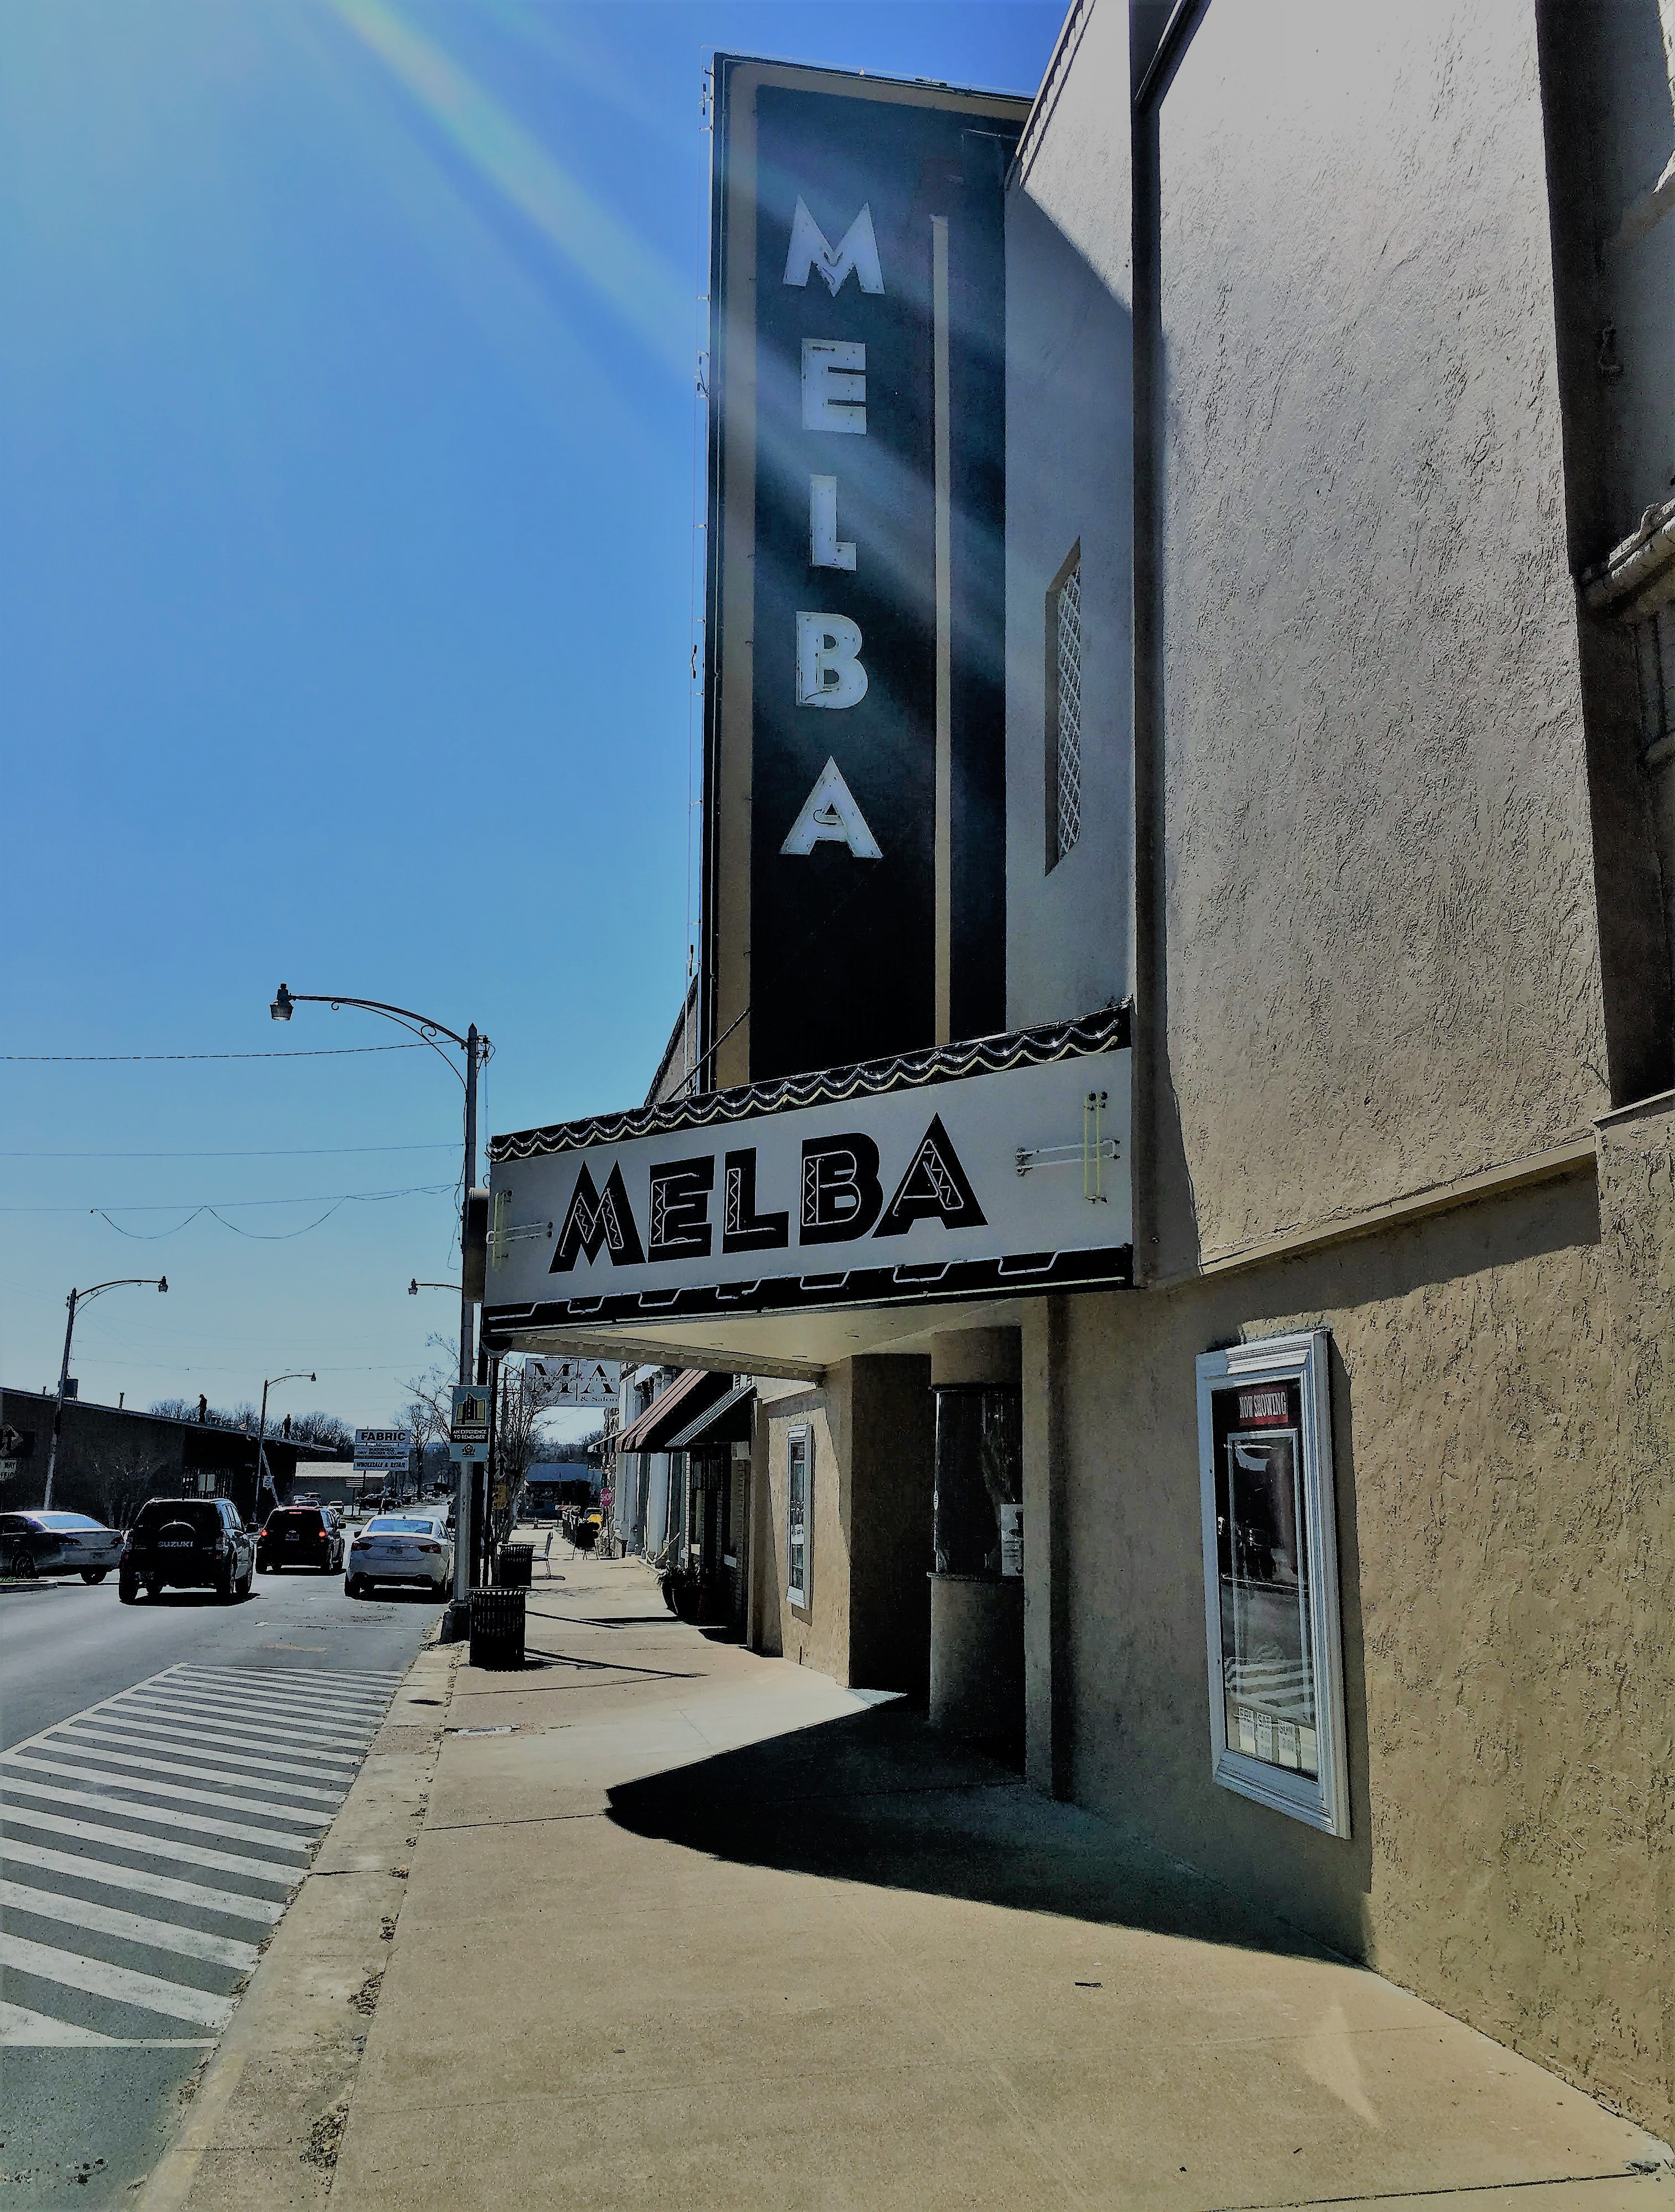 Melba Theater